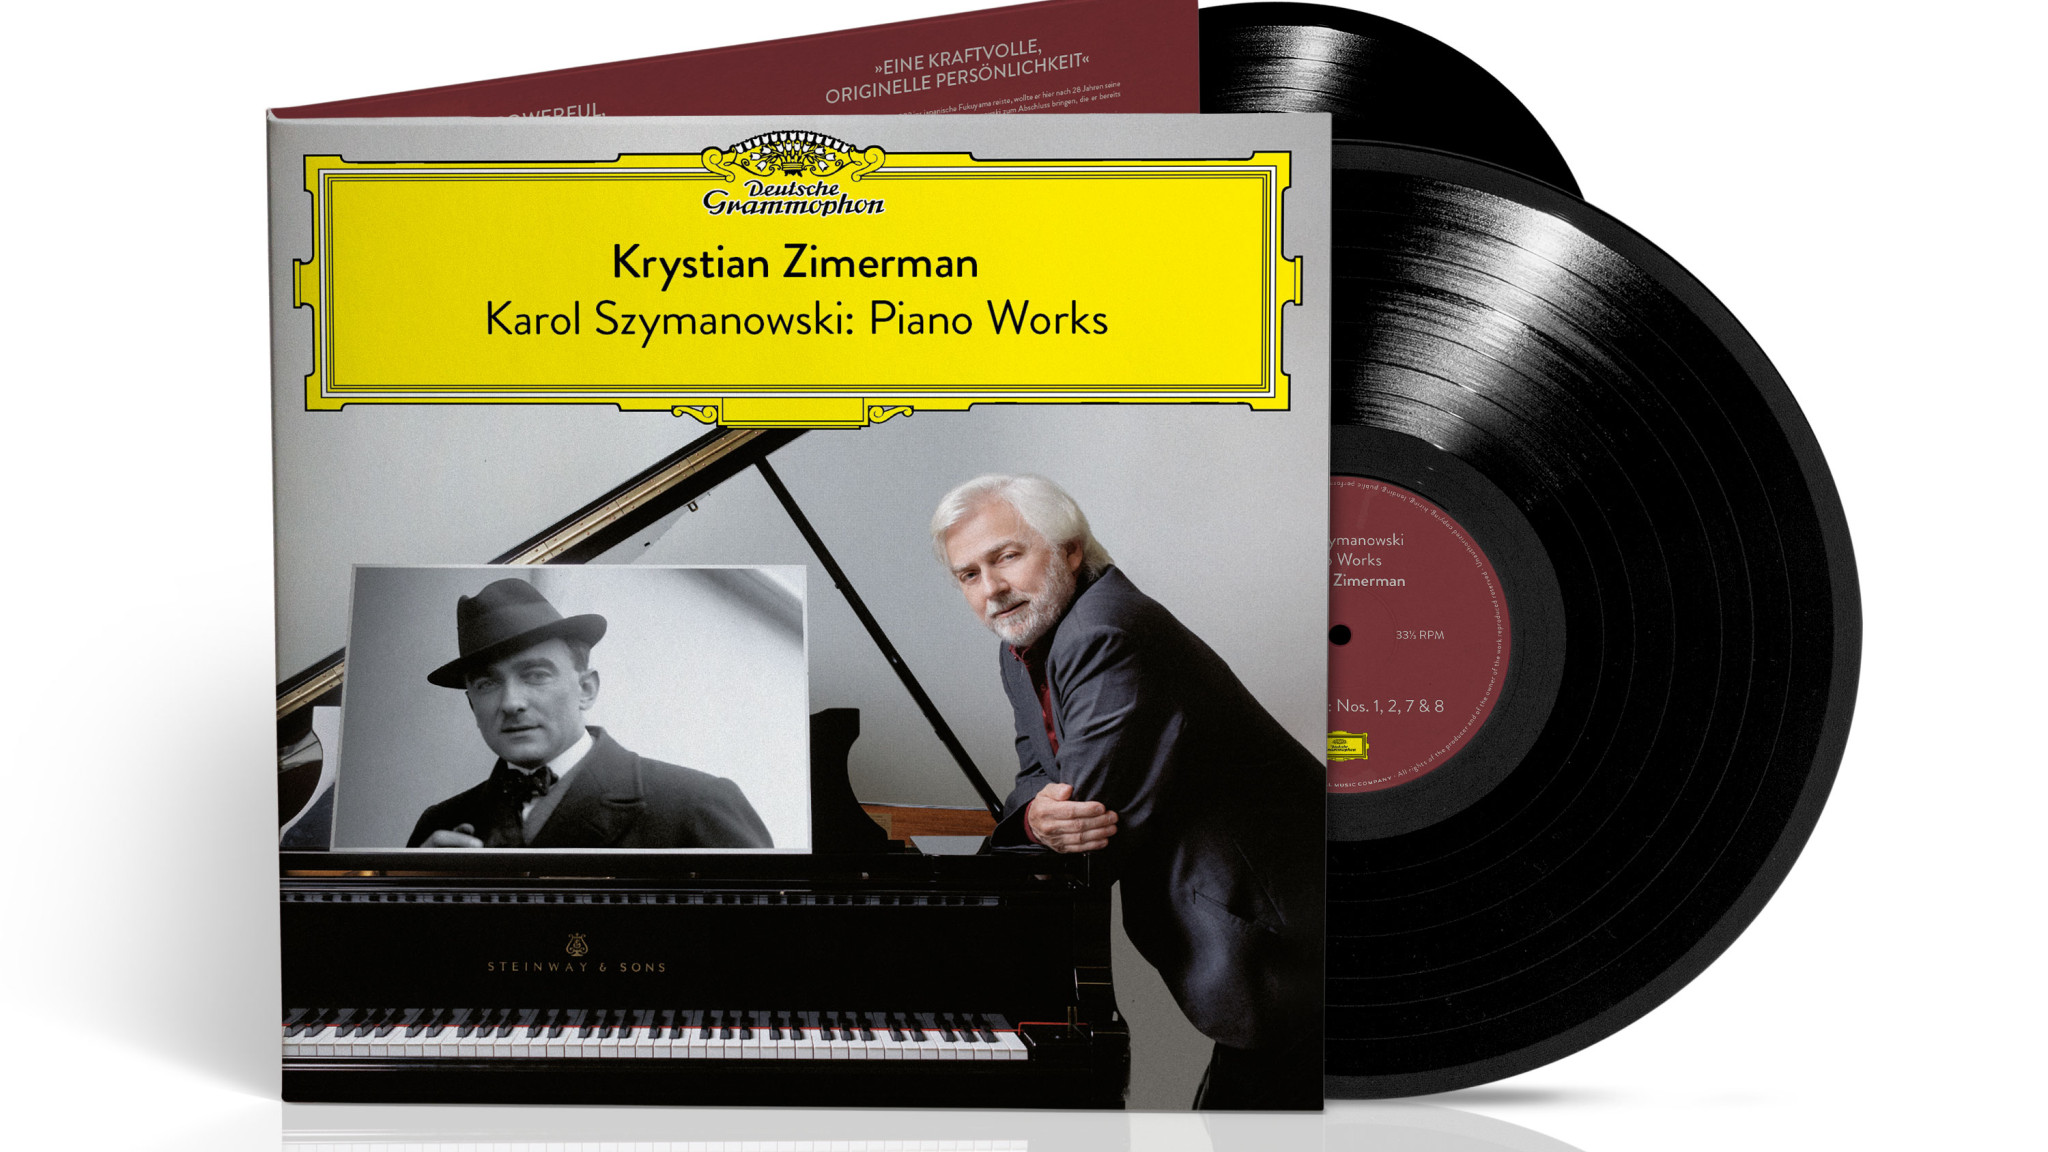 Vinyl-Veröffentlichungen von Deutsche Grammophon würdigen vier Ausnahmepianisten